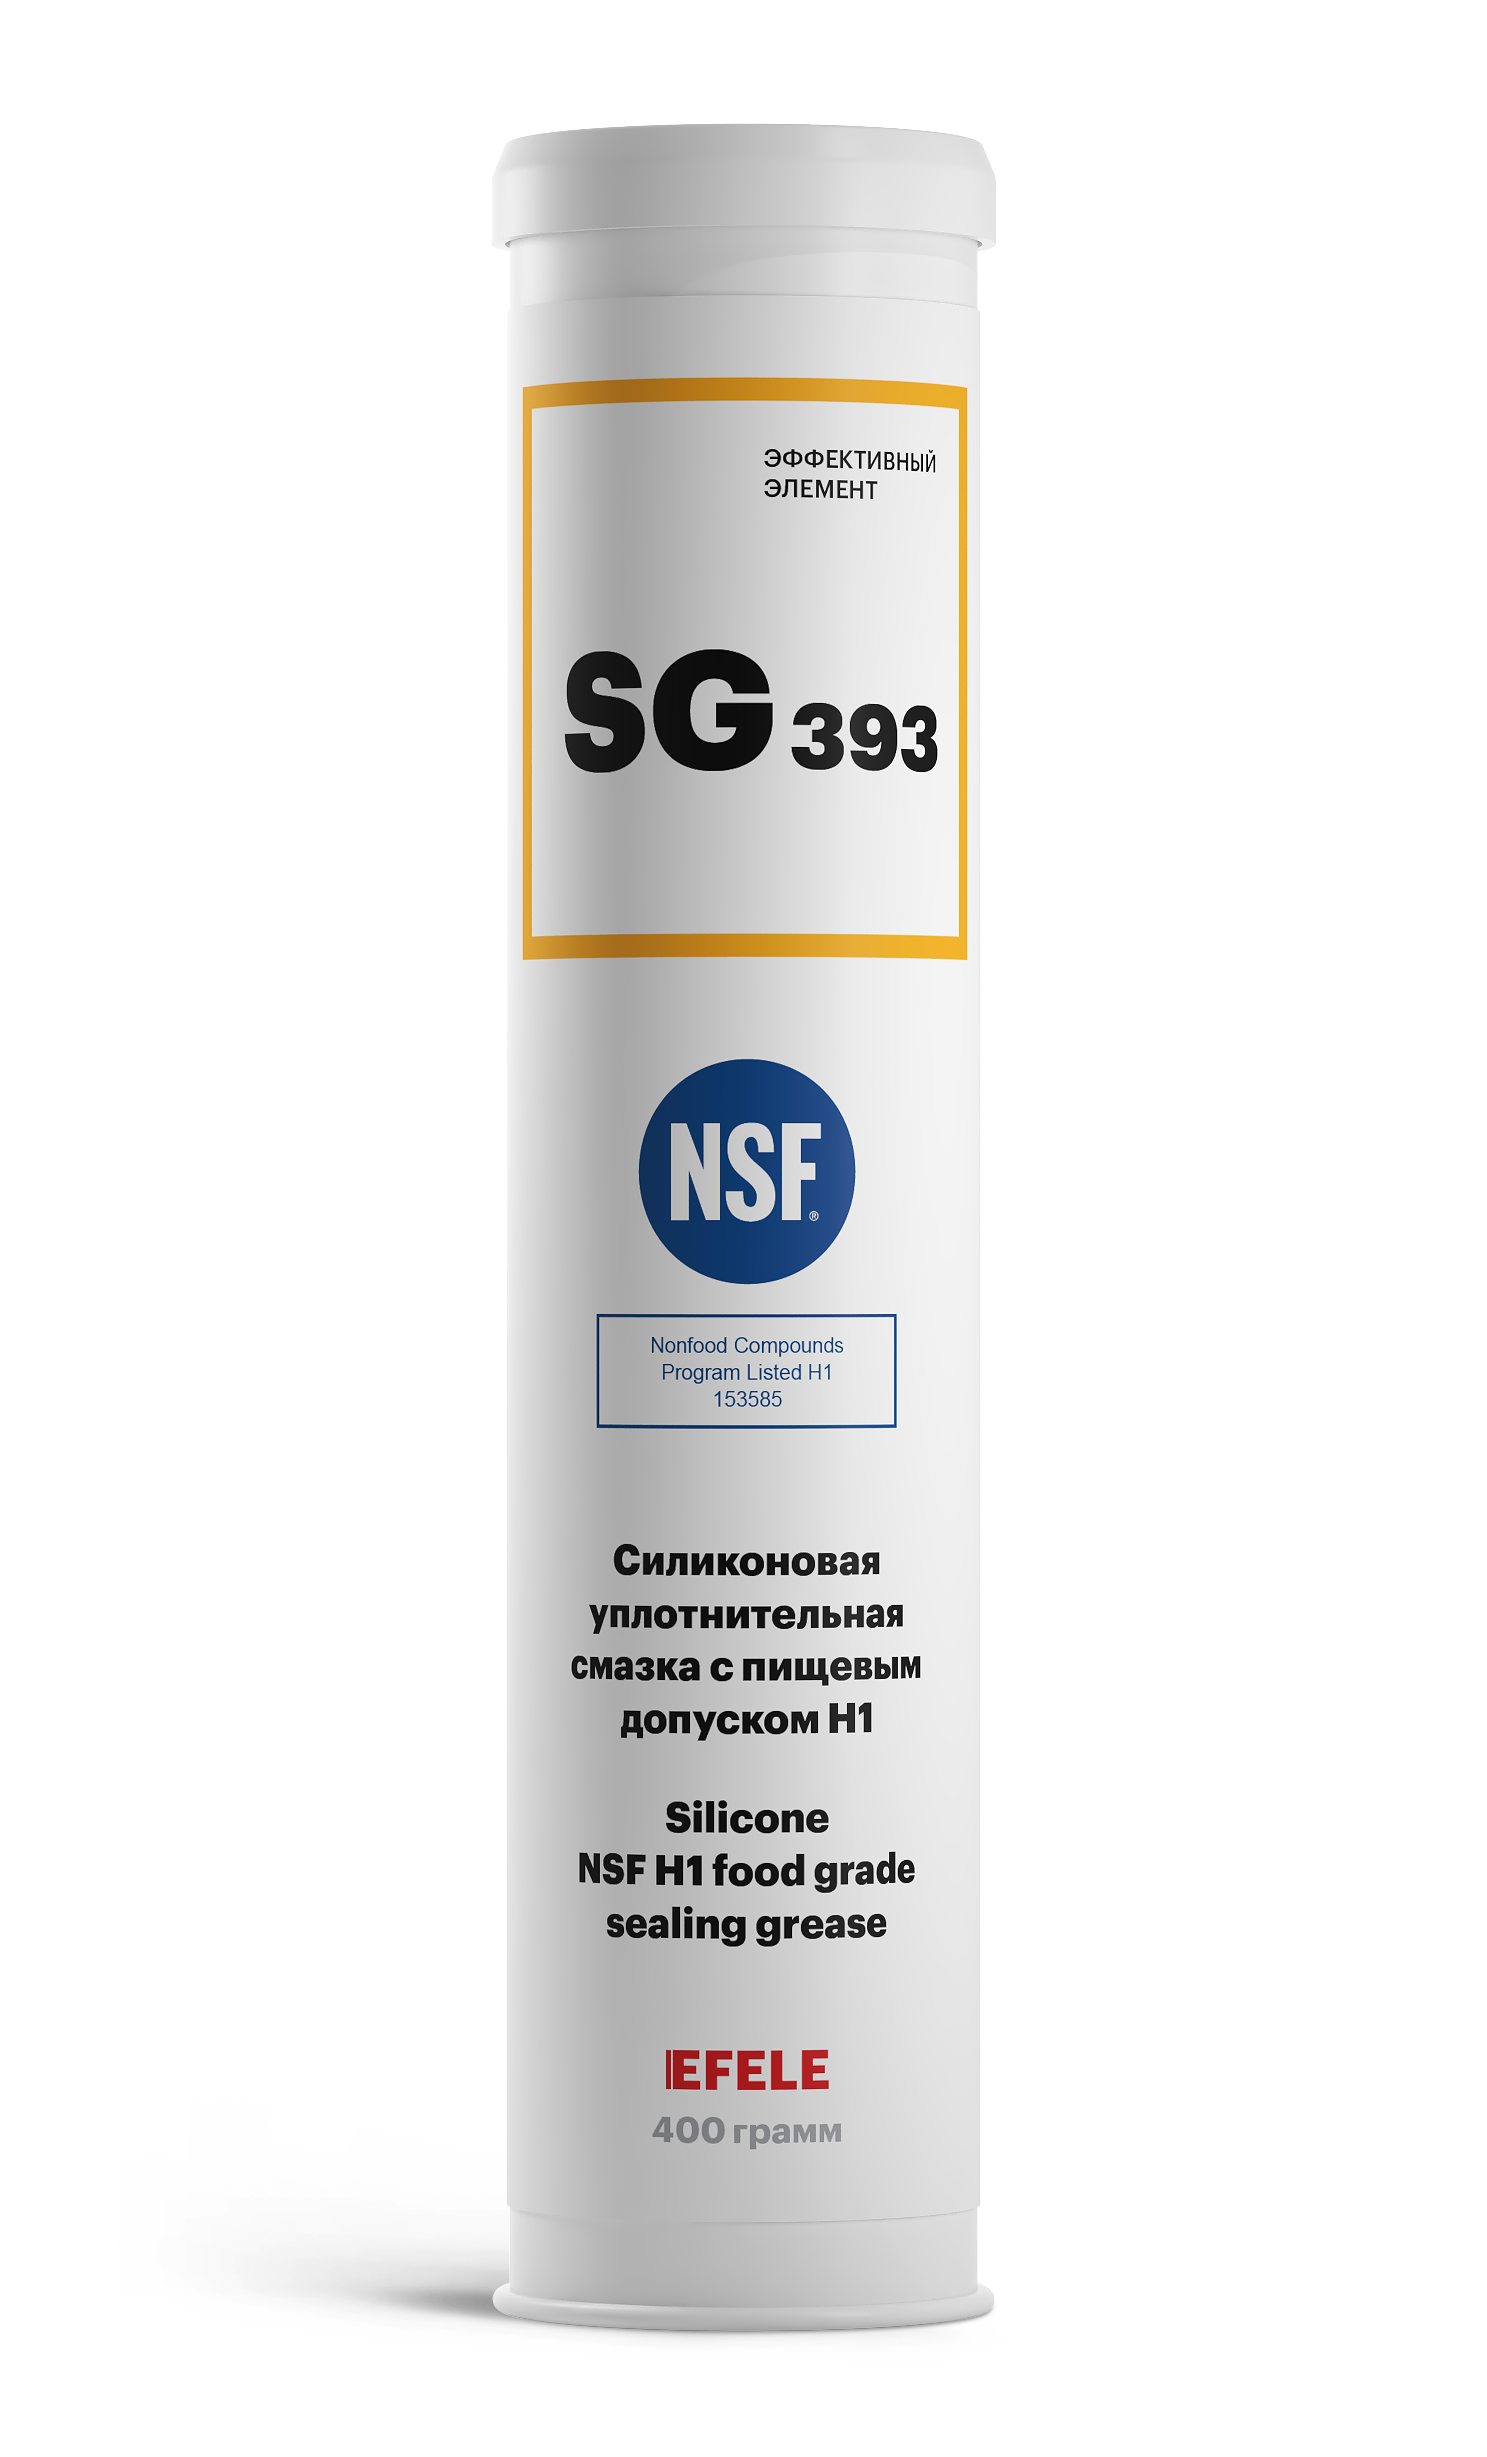 Пластичная силиконовая смазка с пищевым допуском NSF H1 EFELE SG-393 (400 г)